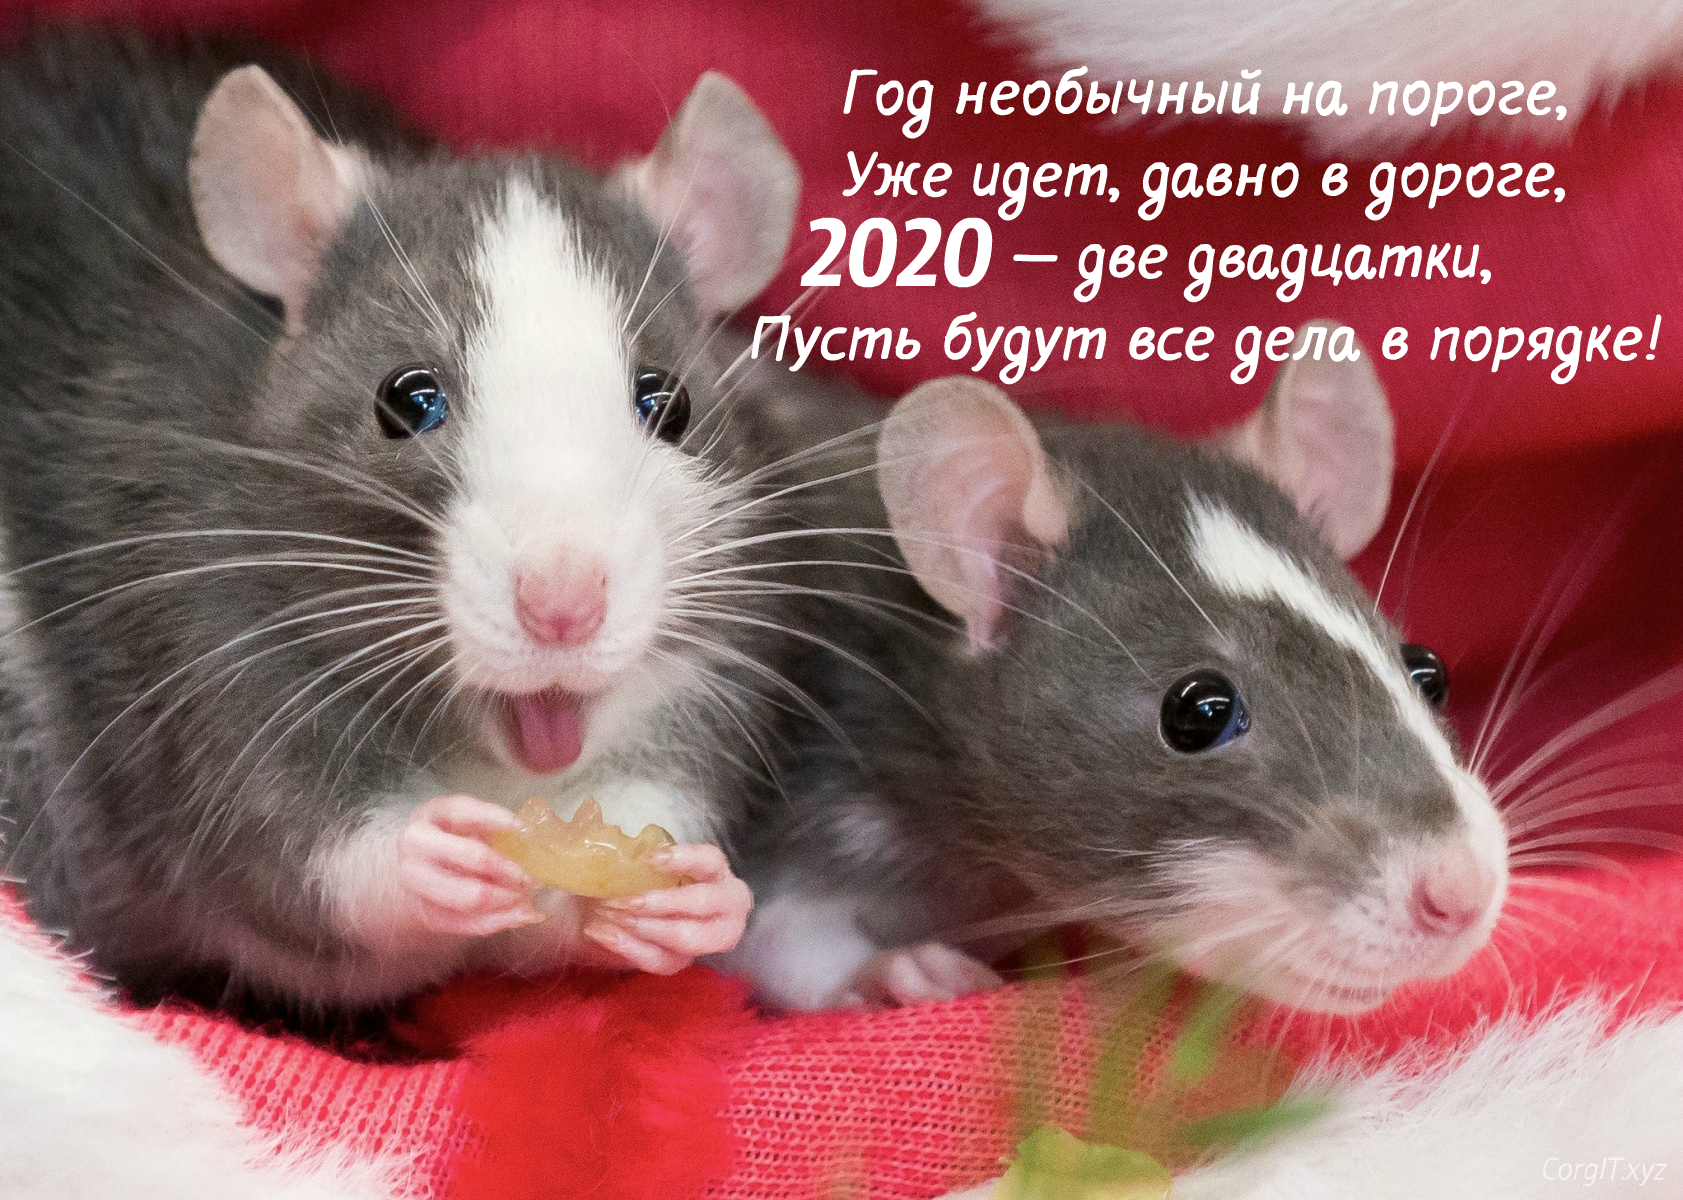 Картинки поздравления с Новым Годом Крысы